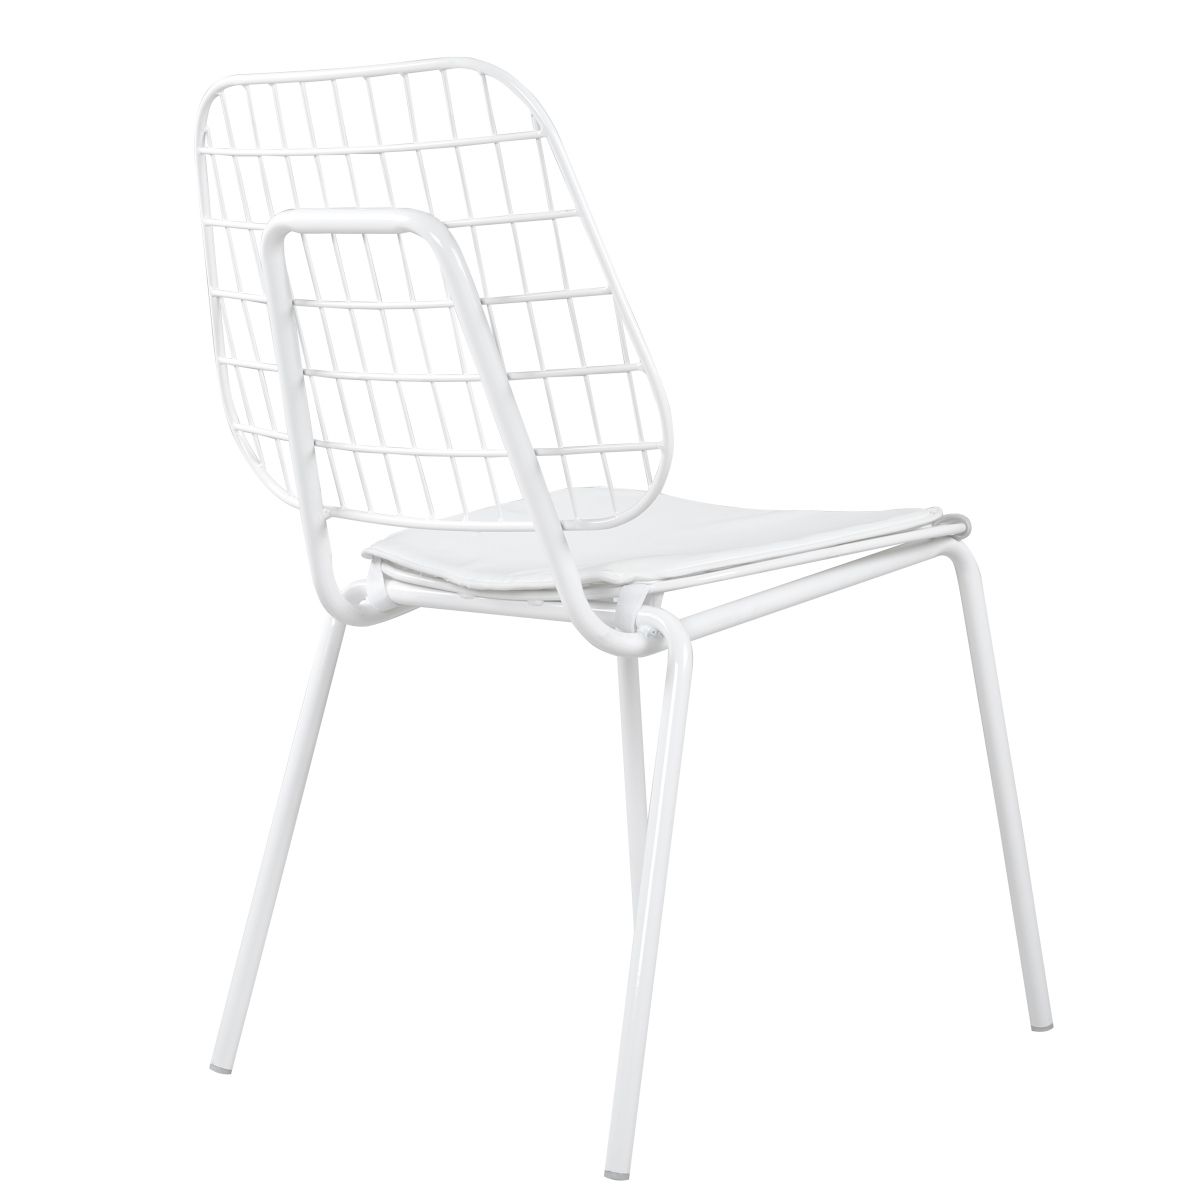 Καρέκλα Μεταλλική ALNUS Με Μαξιλάρι Λευκό 53x55x79cm